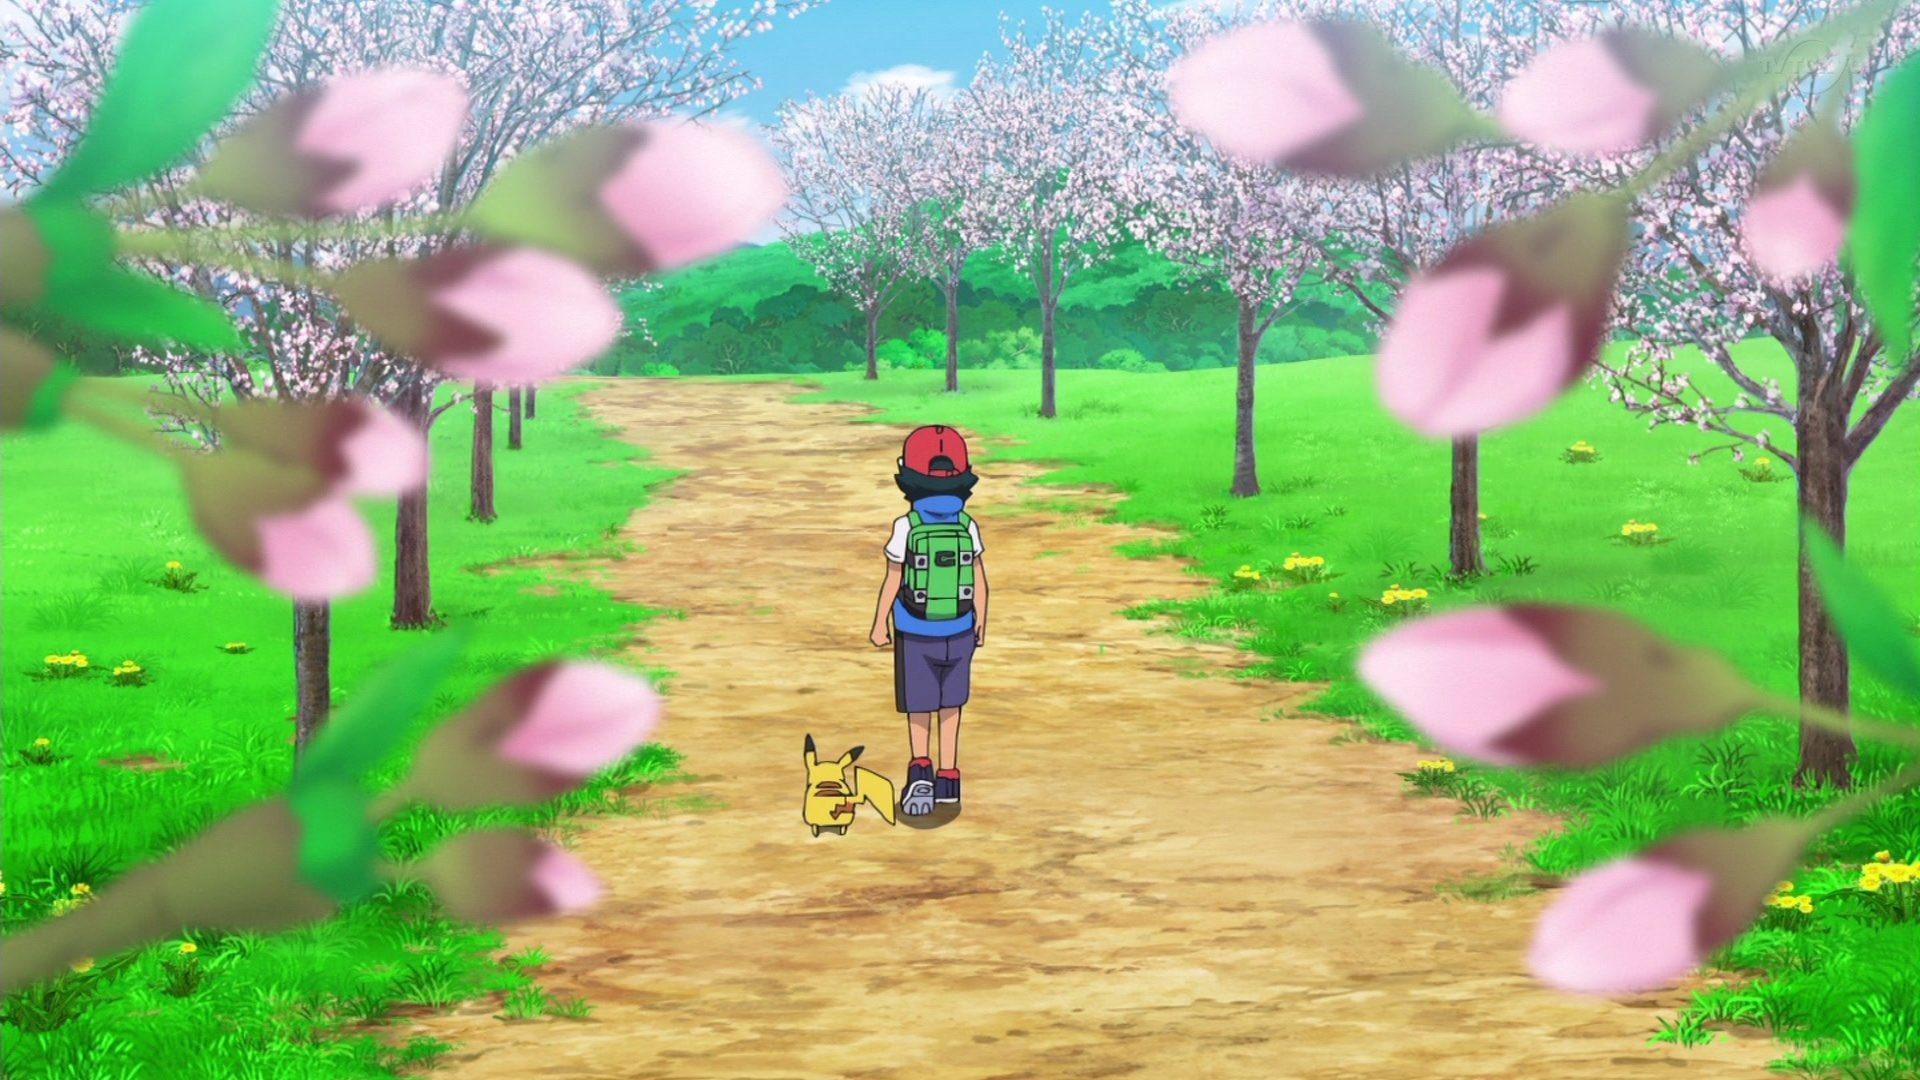 Pokémon anuncia fim da jornada de Ash e Pikachu no anime - Portal